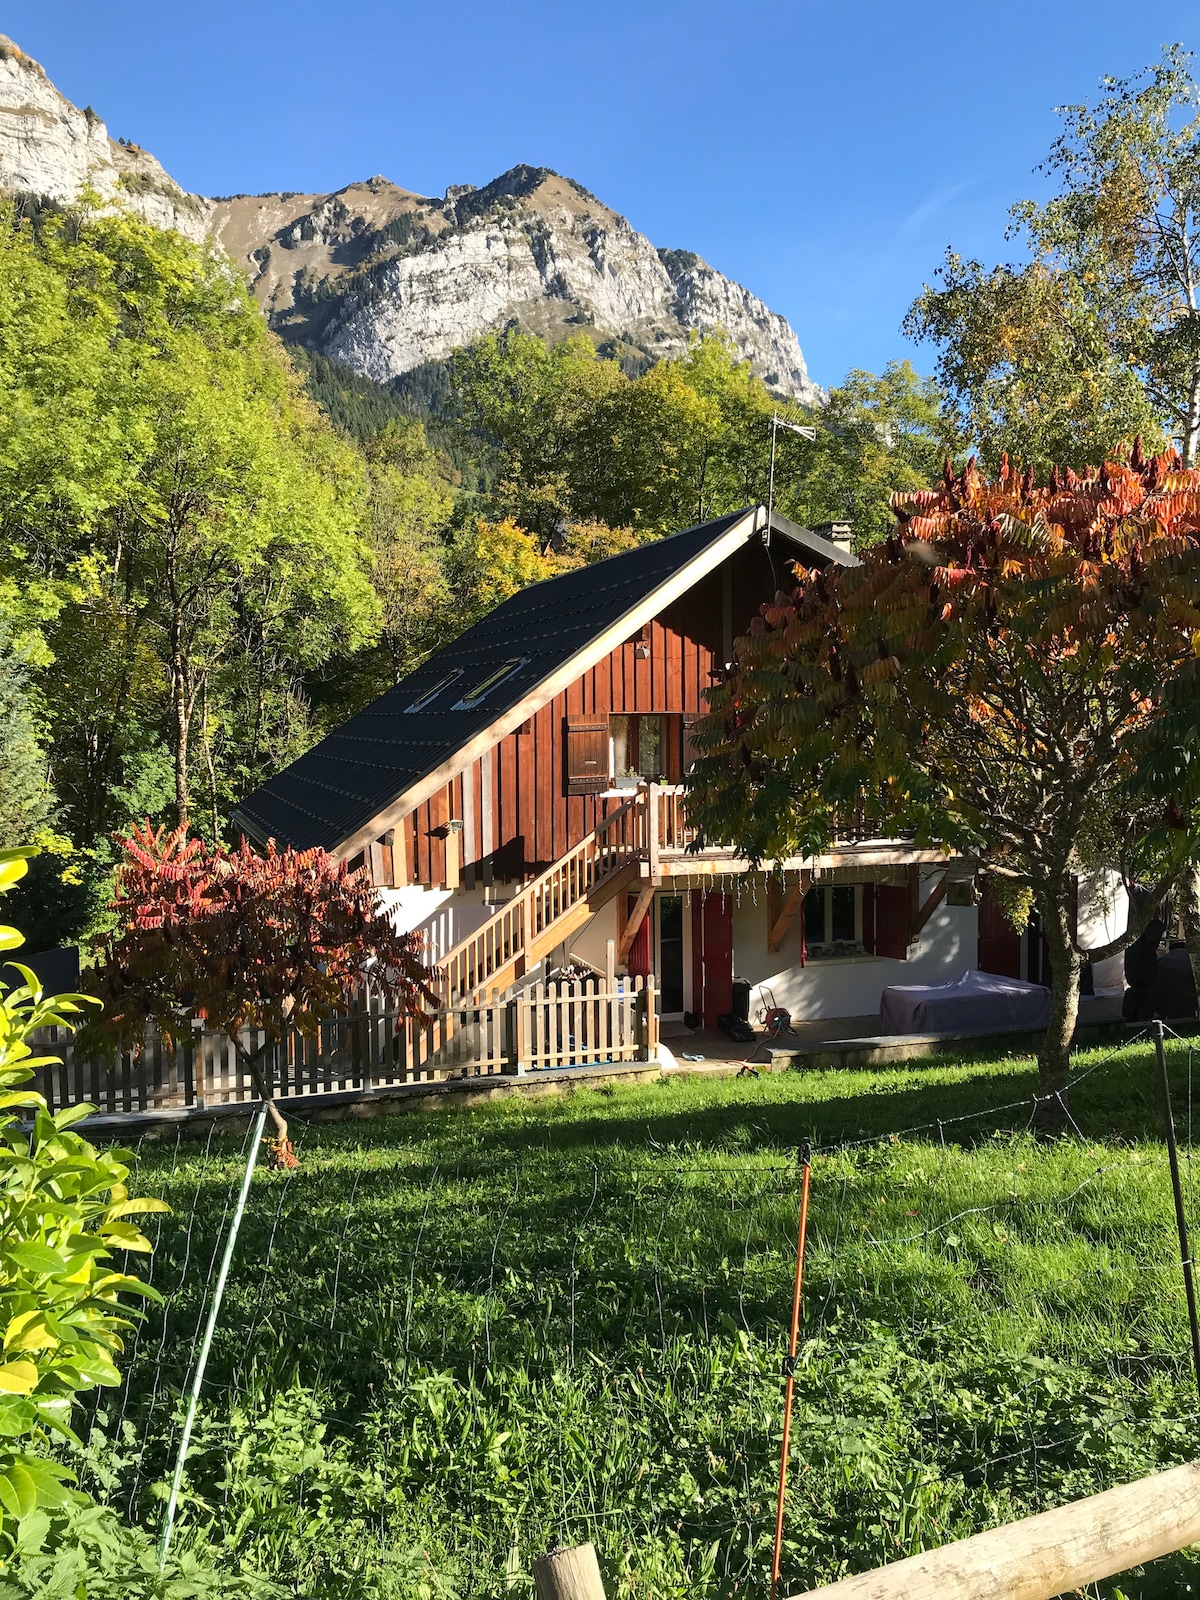 Montmin : locations de vacances et logements - Montmin, Talloires, France |  Airbnb